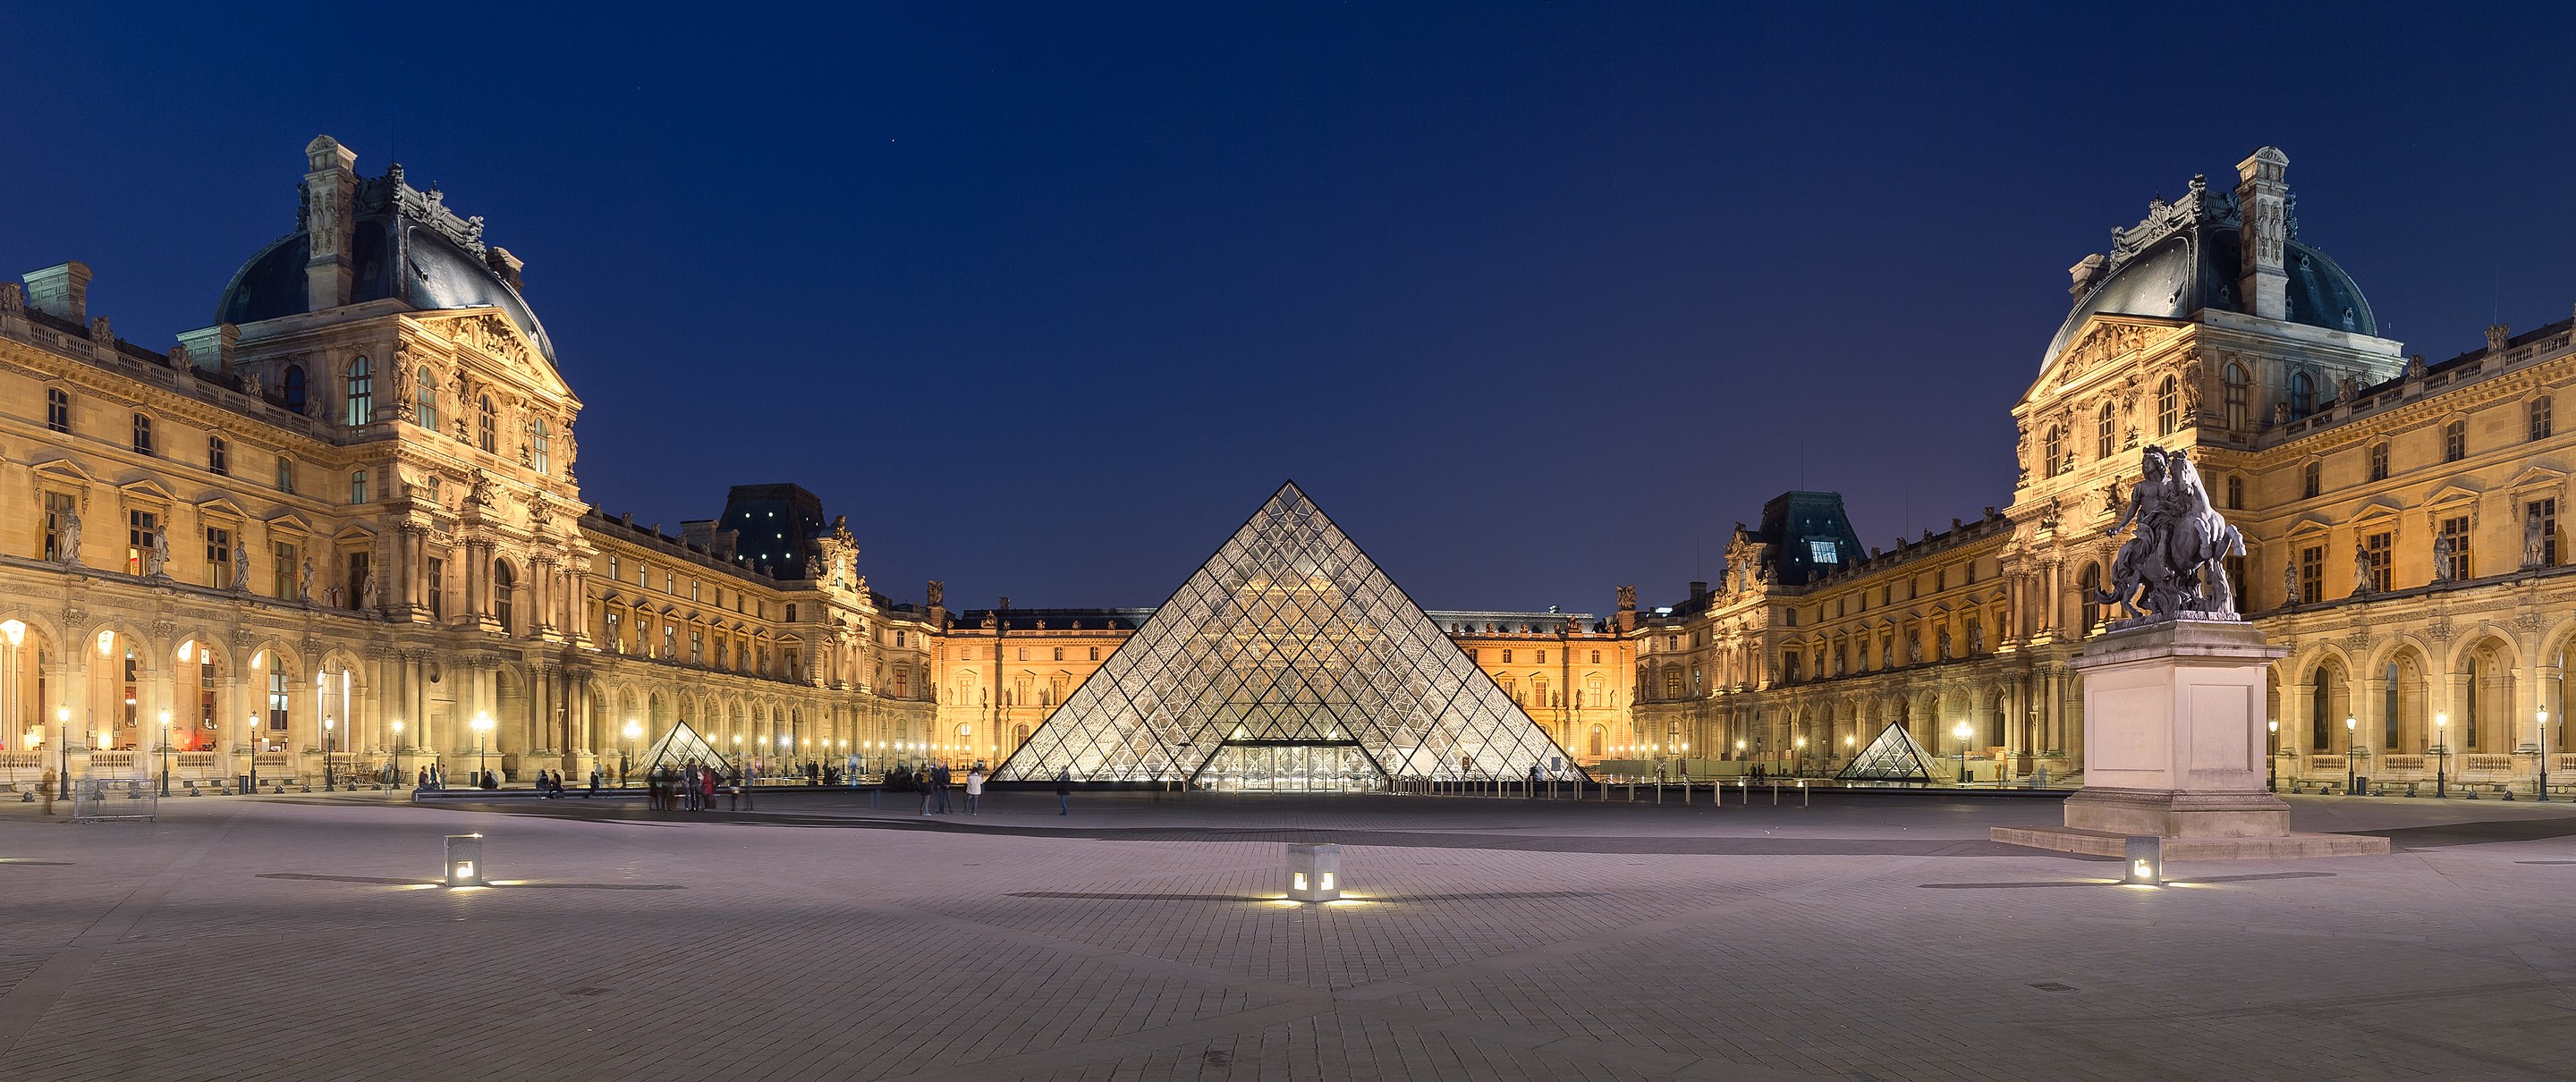 Louvre_Museum_Wikimedia_Commons.jpeg